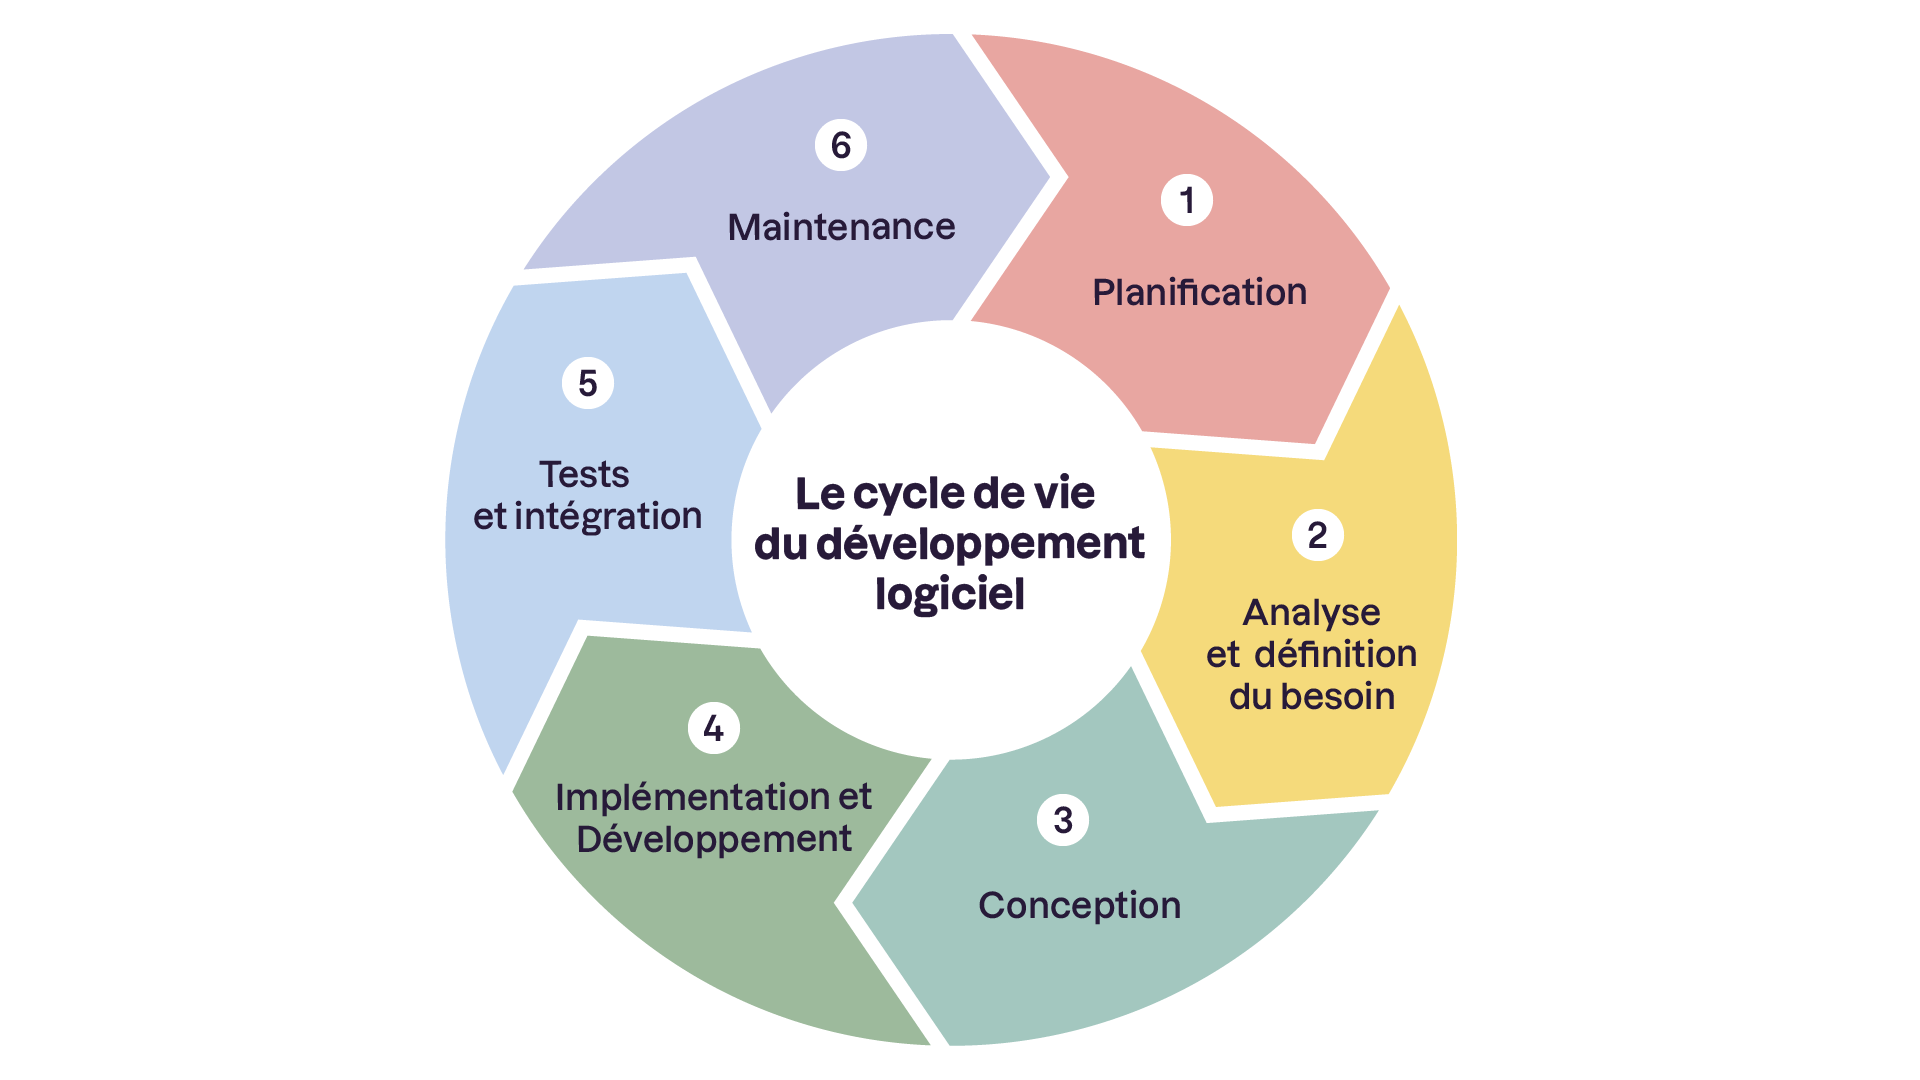 L'image présente le cycle de vie du développement logiciel en six phases : 1. Planification, 2. Analyse et définition du besoin, 3. Conception, 4. Implémentation et développement, 5. Tests et intégration, et 6. Maintenance. C'est un diagramme cycliq